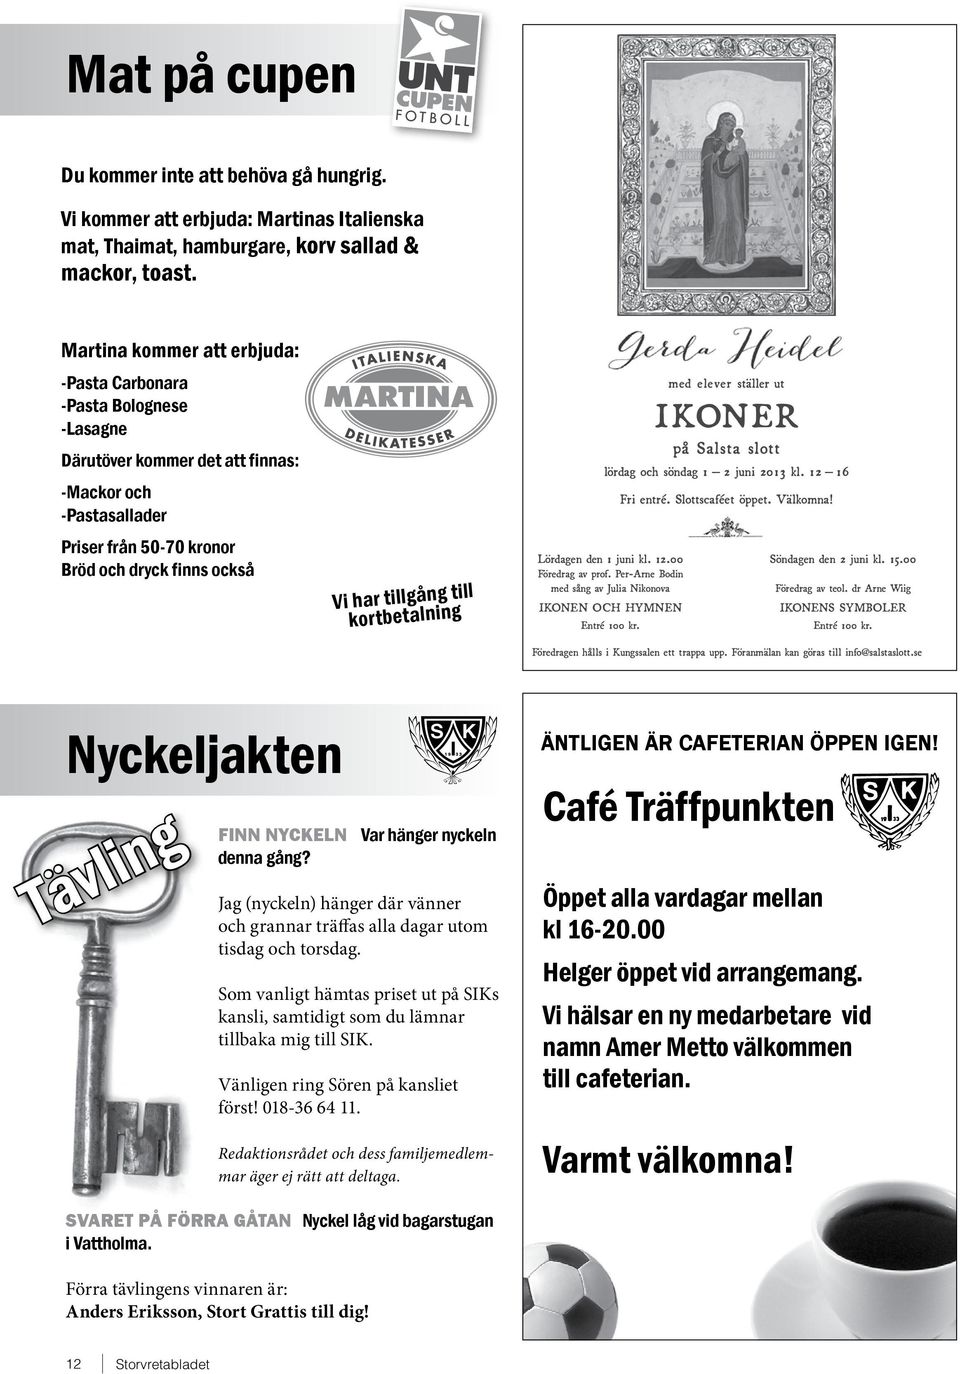 till kortbetalning med elever ställer ut IKONER på Salsta slott lördag och söndag 1 2 juni 2013 kl. 12 16 Lördagen den 1 juni kl. 12.00 Föredrag av prof.